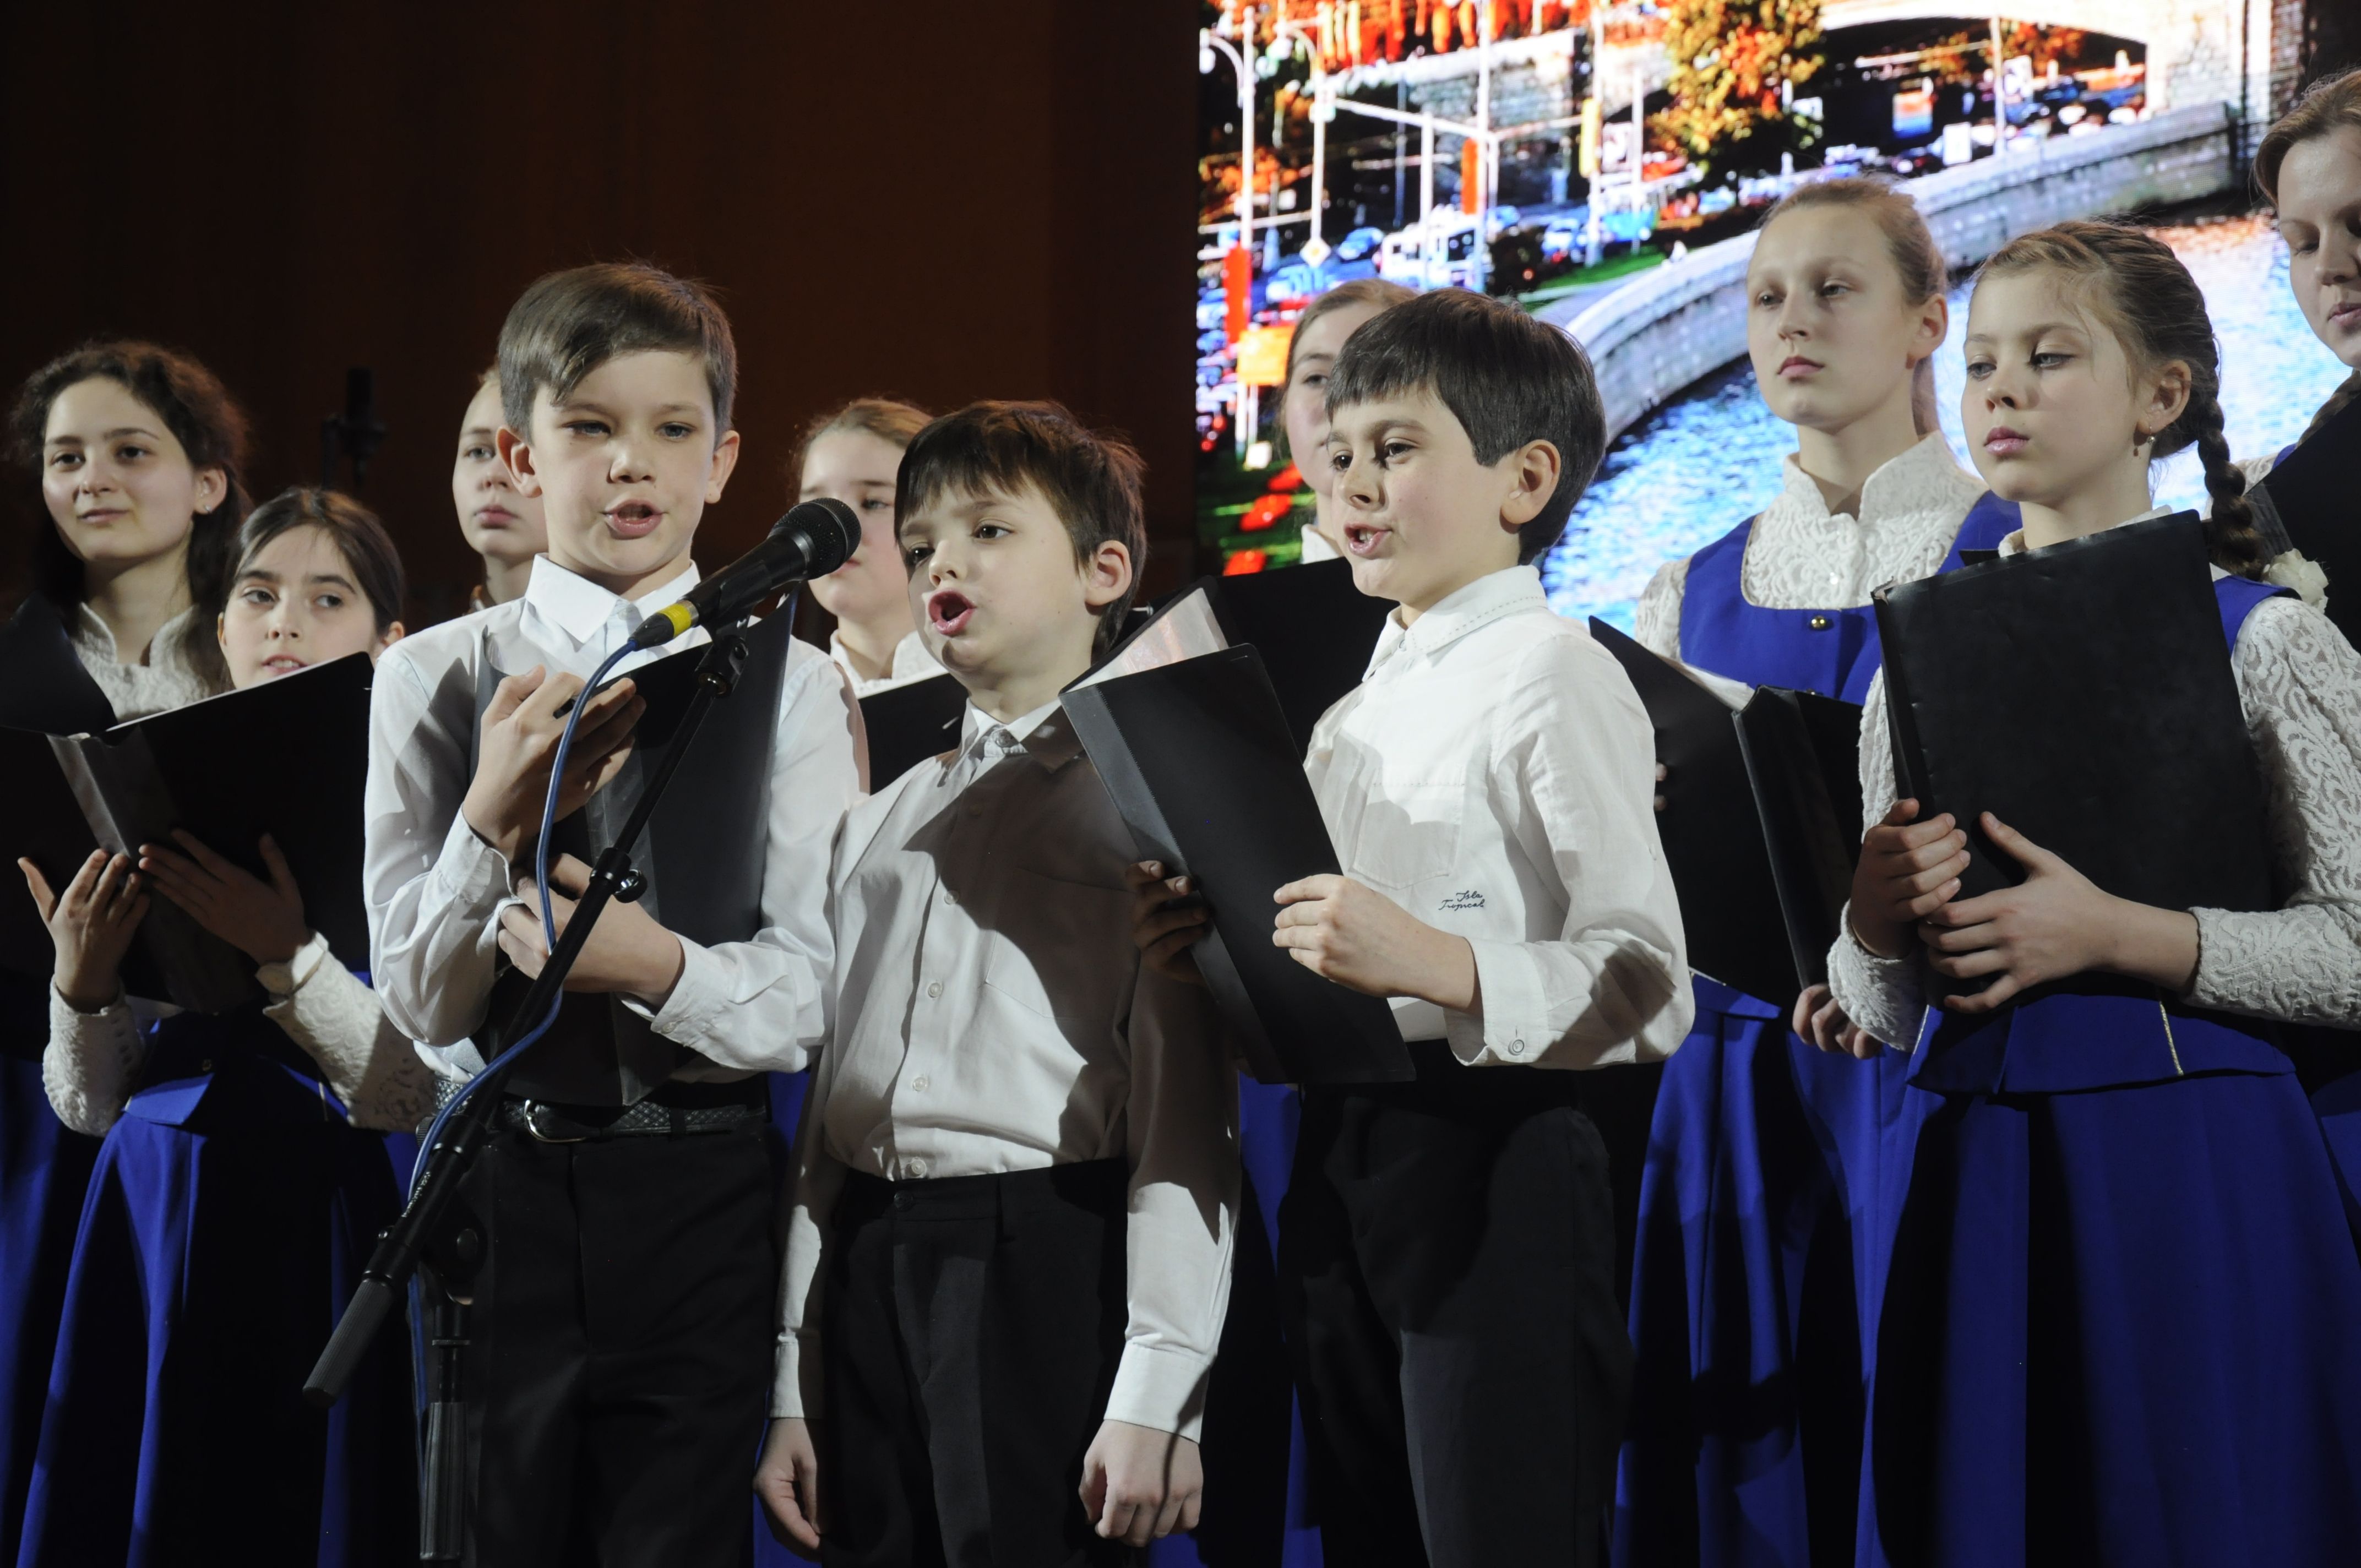 Артисты детского хора из Щербинки выступят в Зеленограде. Фото: Елизавета Королева, «Вечерняя Москва»